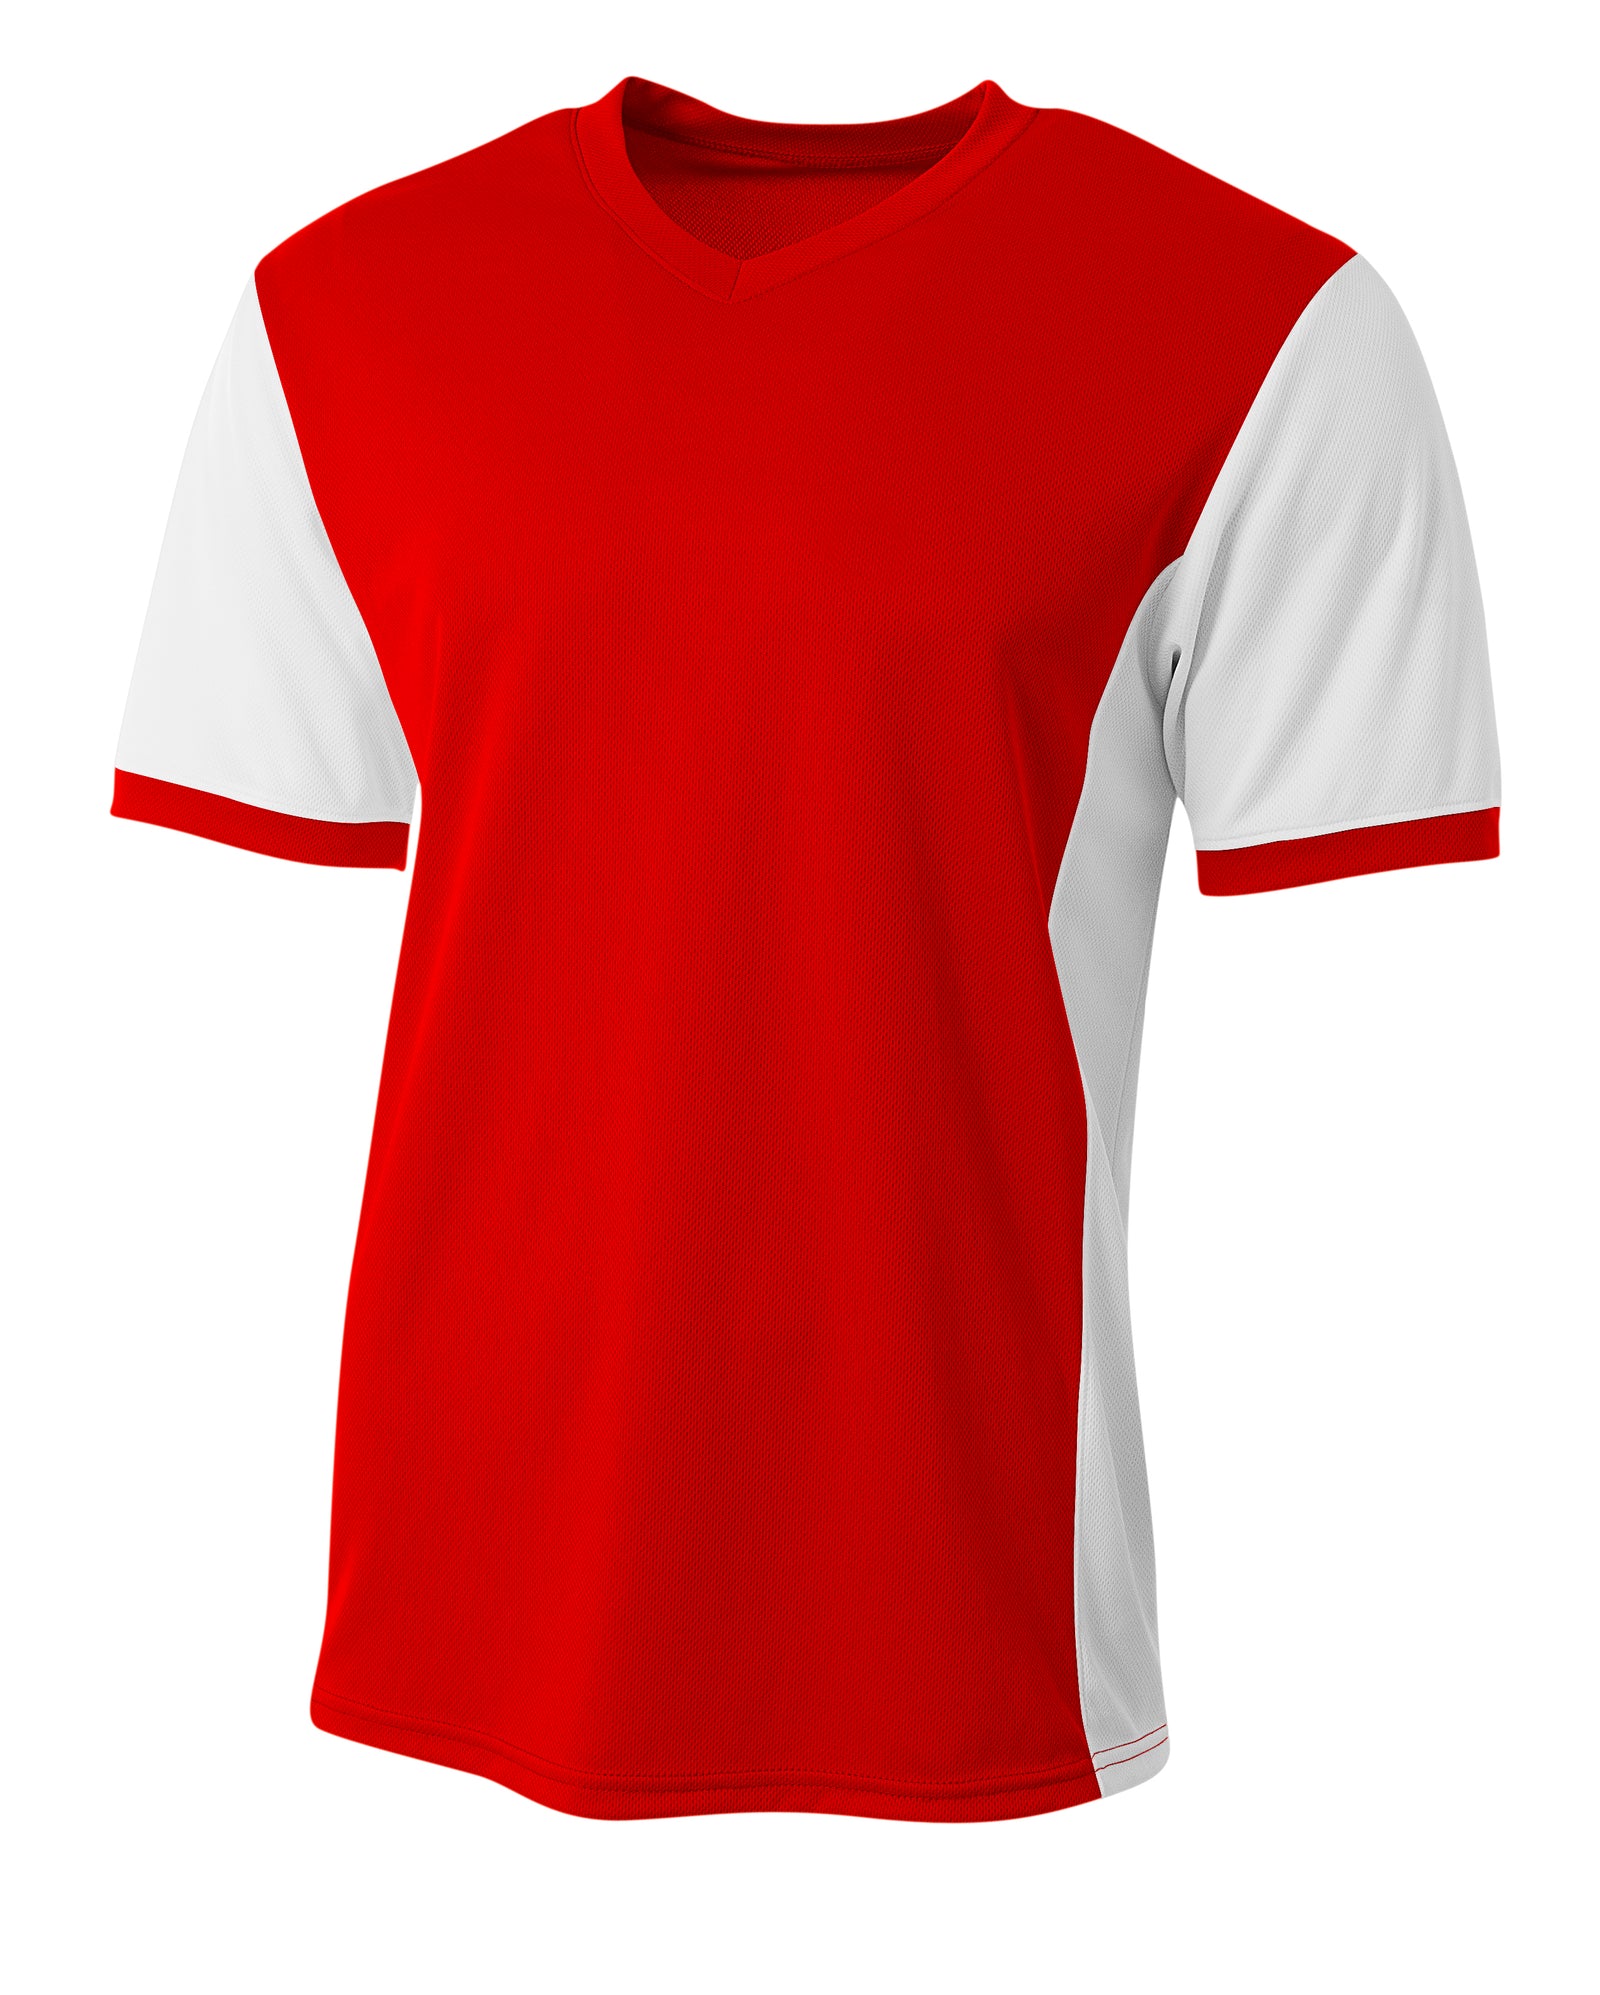 Scarlet/white A4 A4 Premier Soccer Jersey